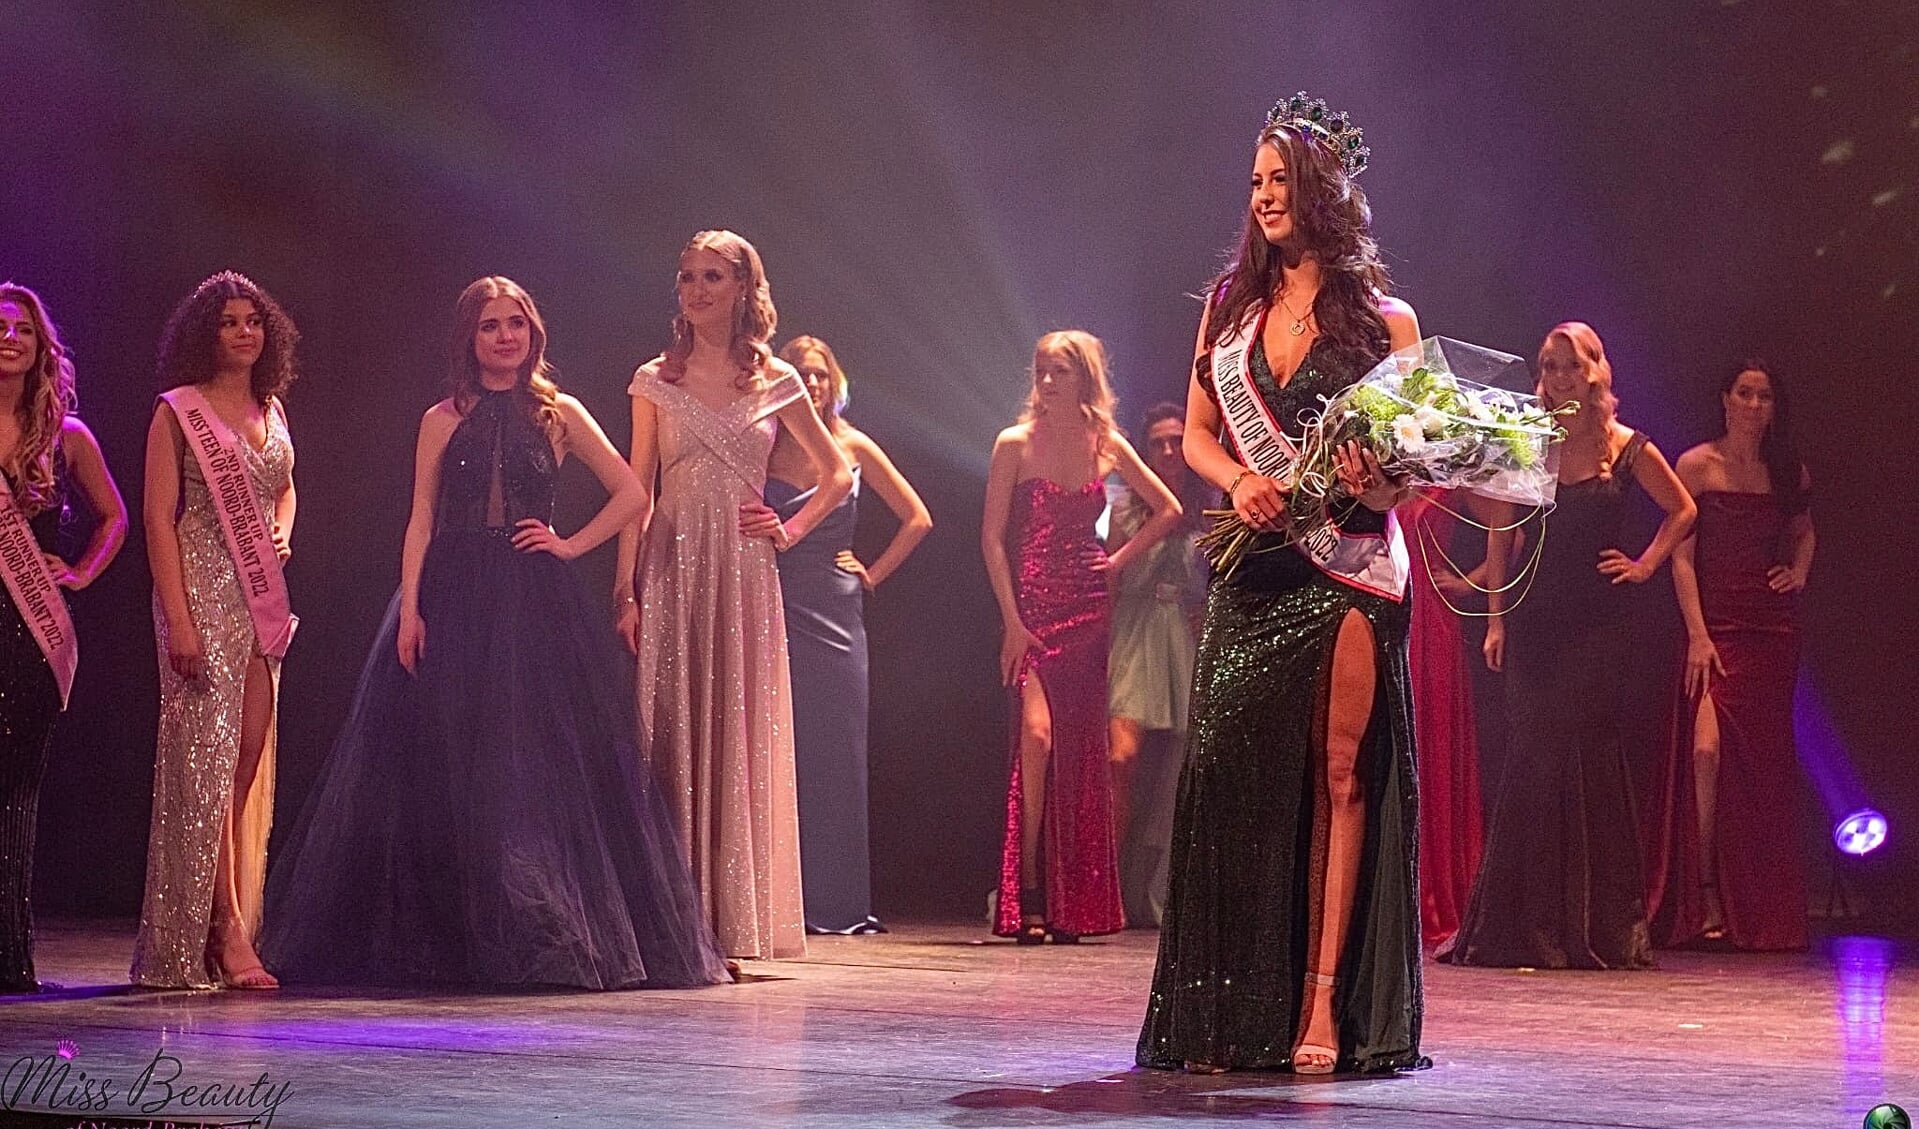 De Boxmeerse Lotte Berbers is gekroond tot Miss Beauty of Noord-Brabant 2022. Foto: John Vermeeren.